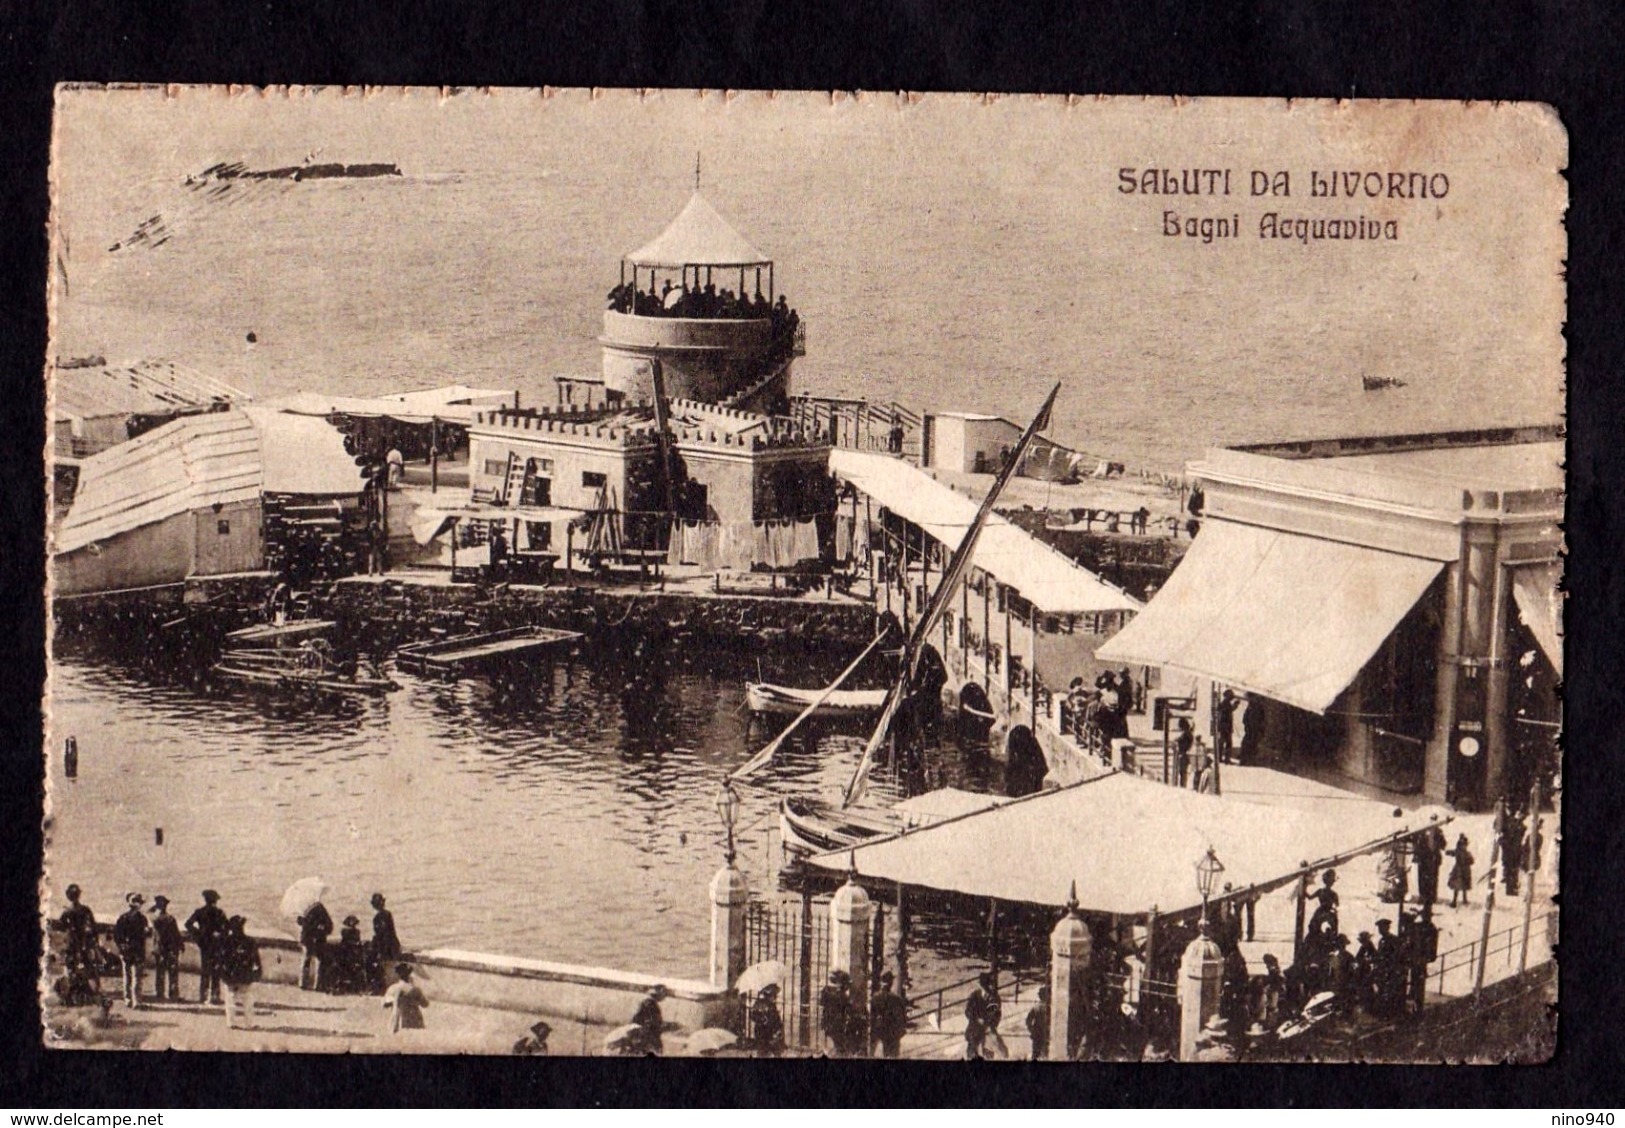 SALUTI DA LIVORNO - Bagni Acquaviva - F/P - V: 1917 - SB - Livorno